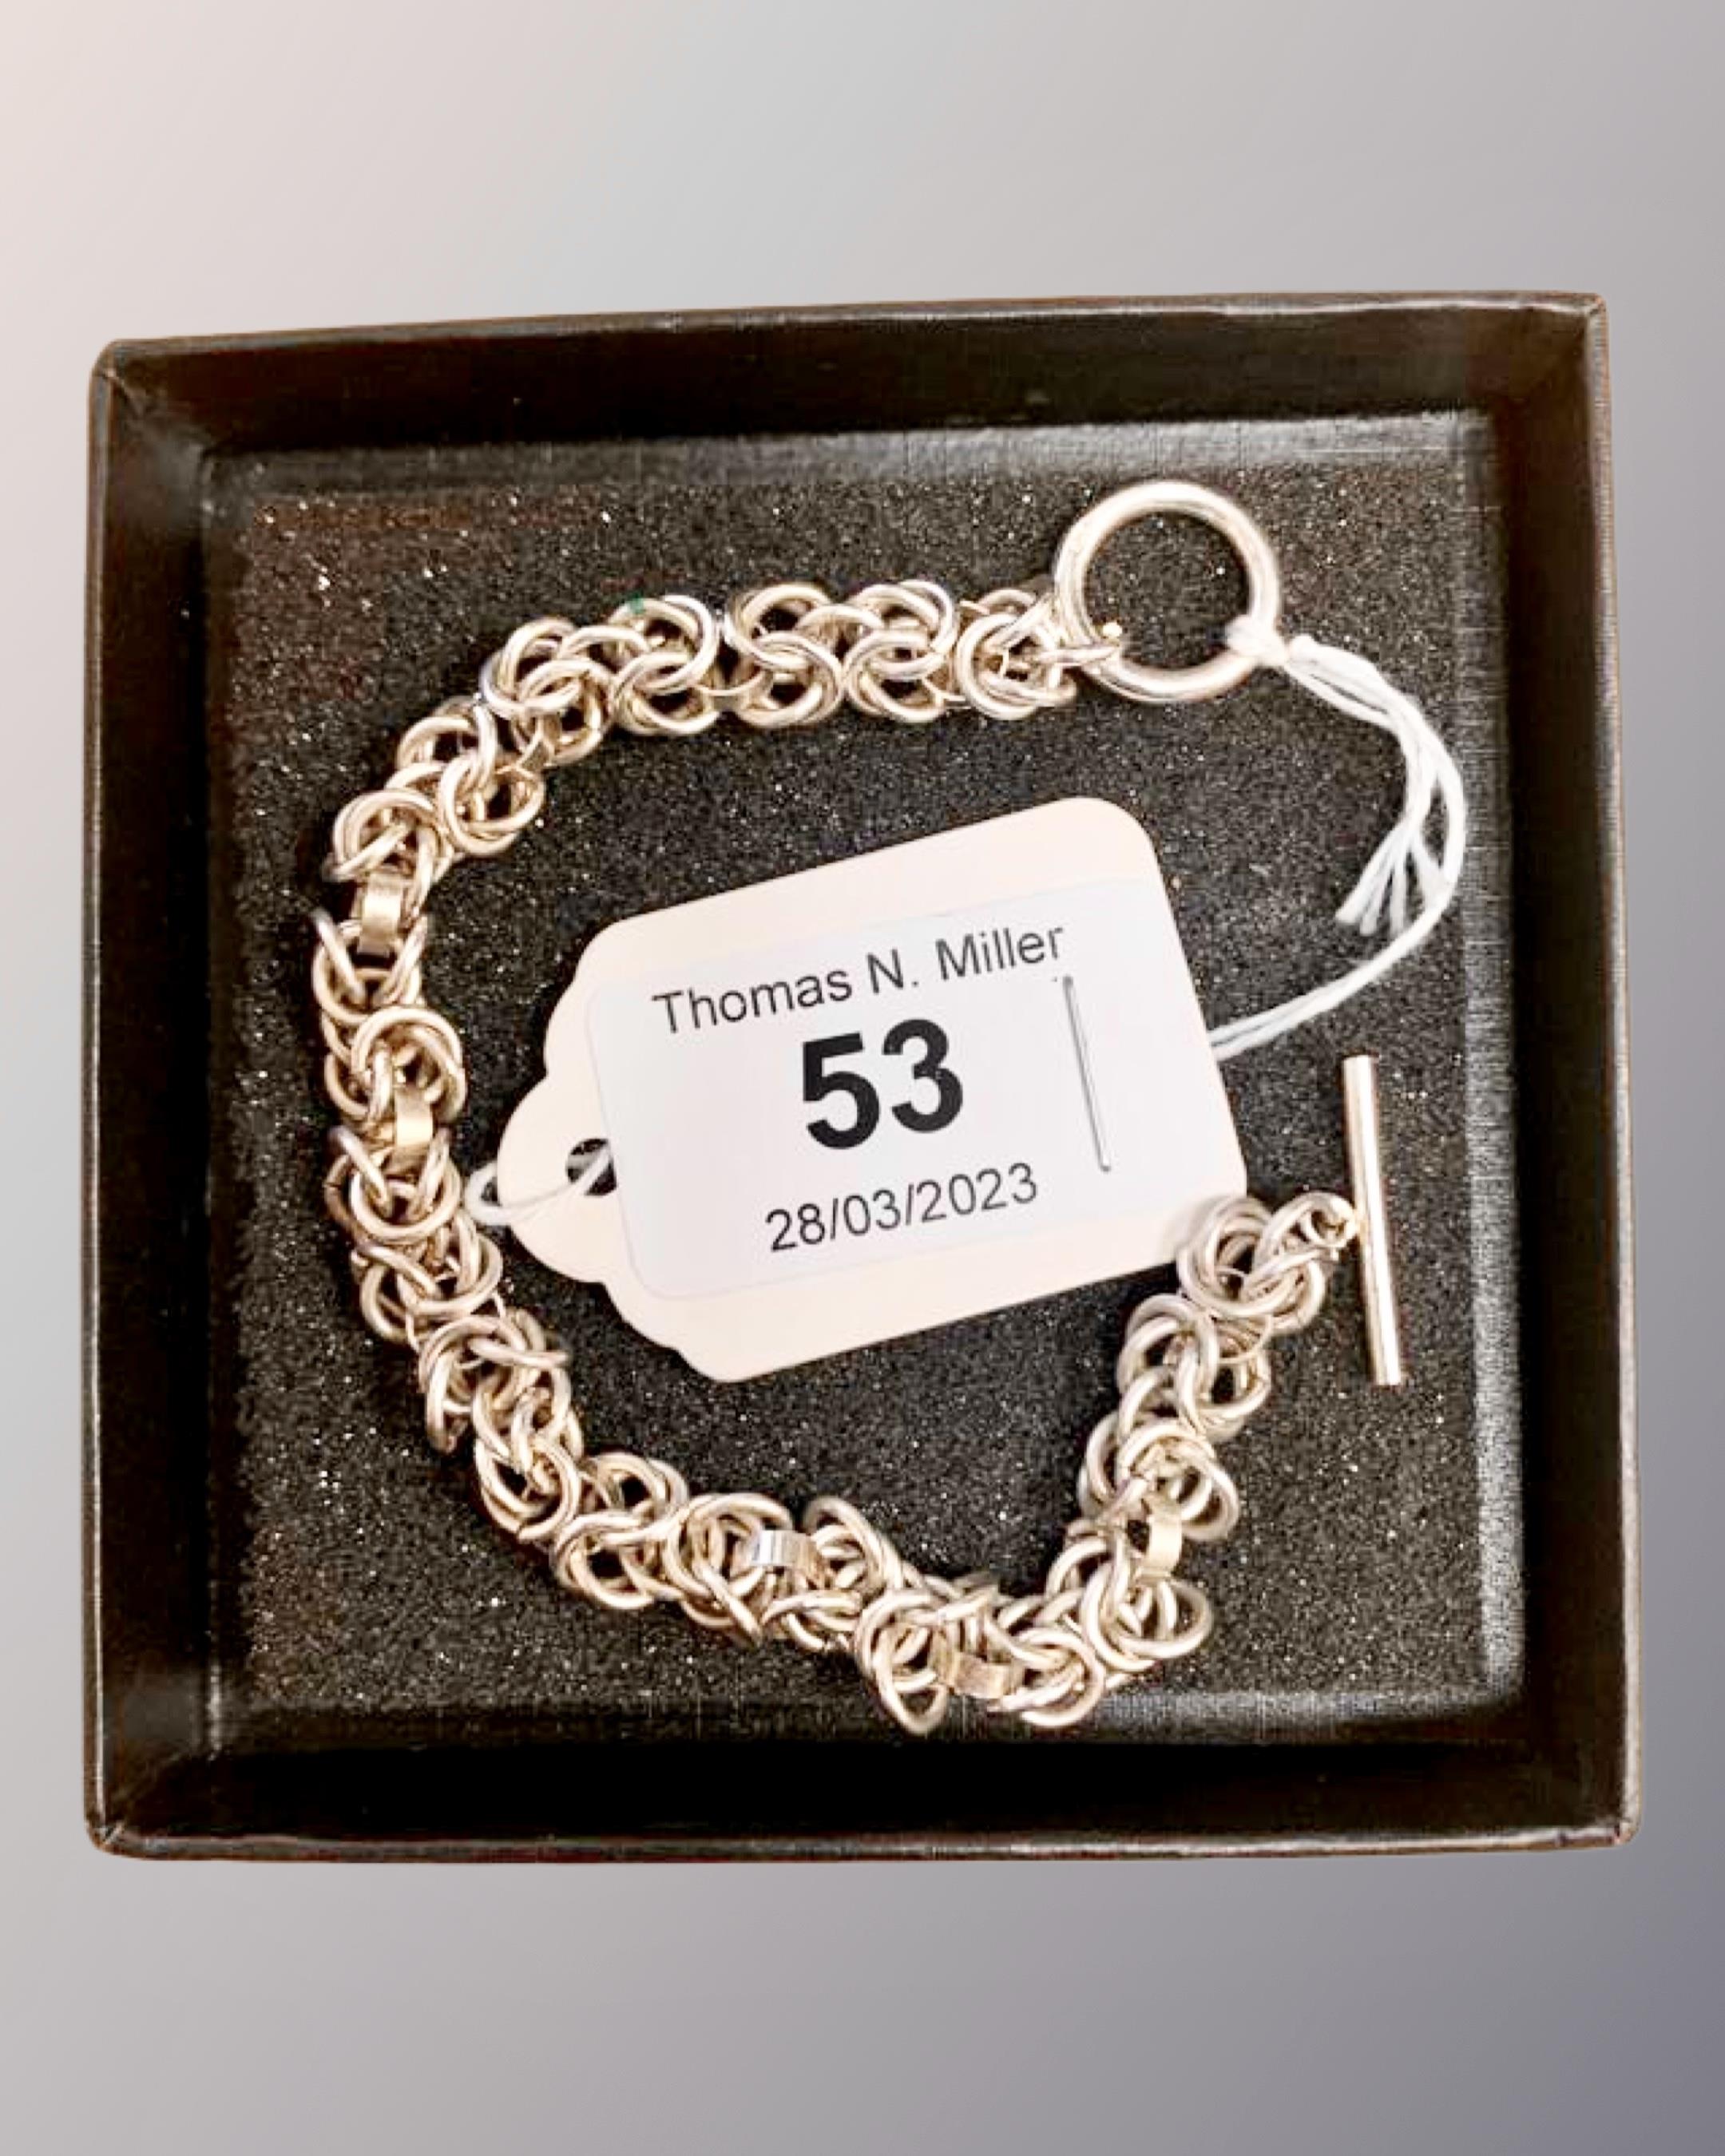 A 7.5" silver bracelet.